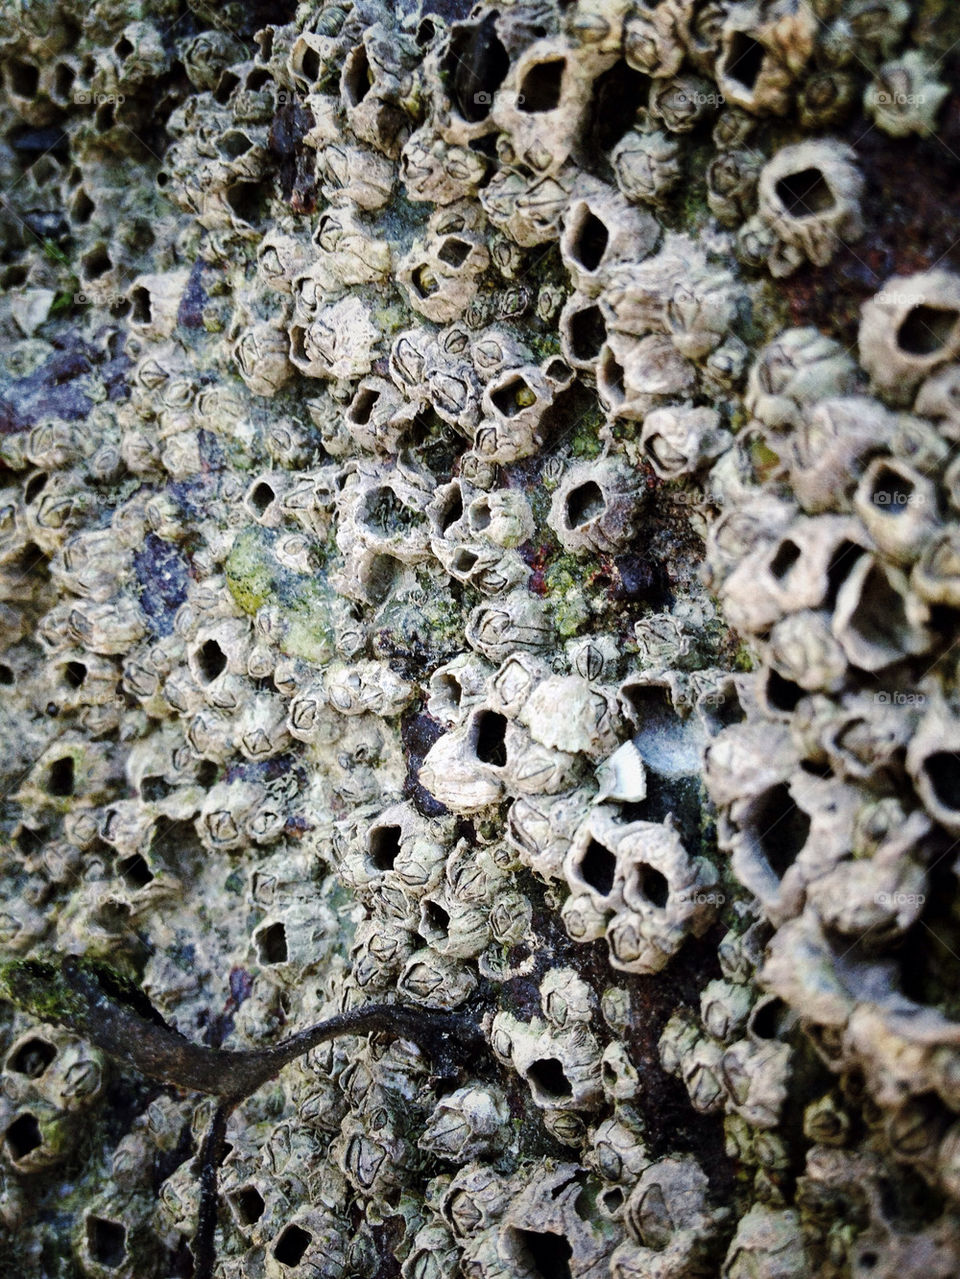 ocean sea rock barnacles by kirimoth